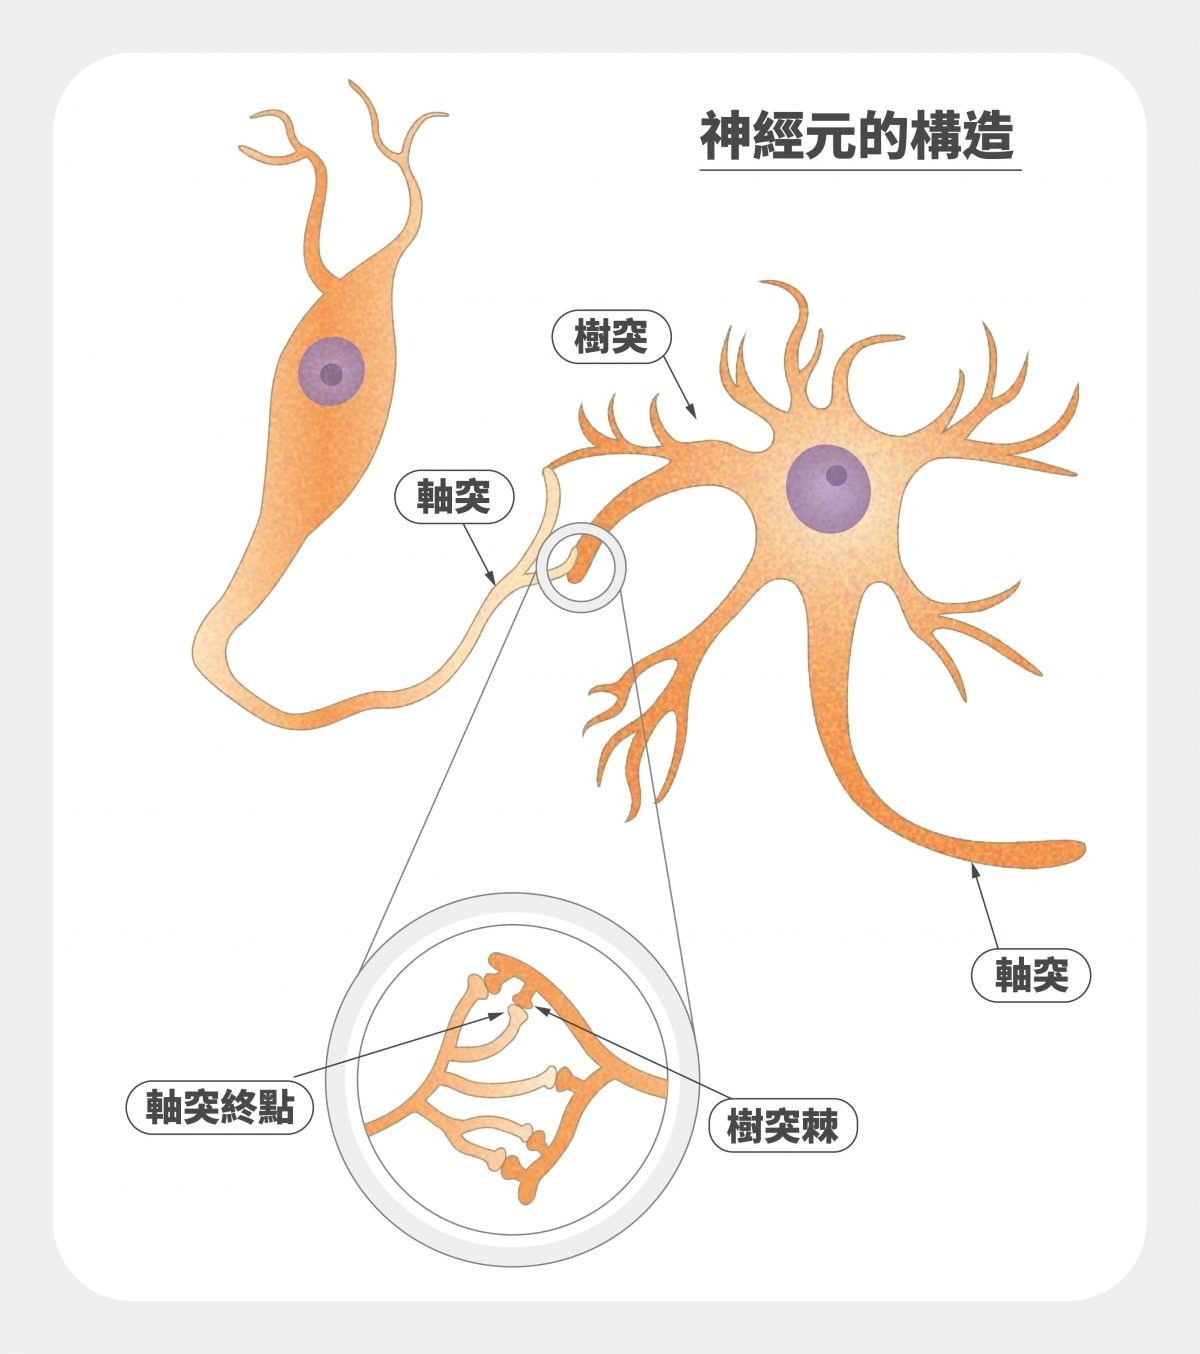 兩個神經元彼此連結，軸突終點與樹突棘的接觸點為突觸。 圖｜研之有物（資料來源｜Current Biology）